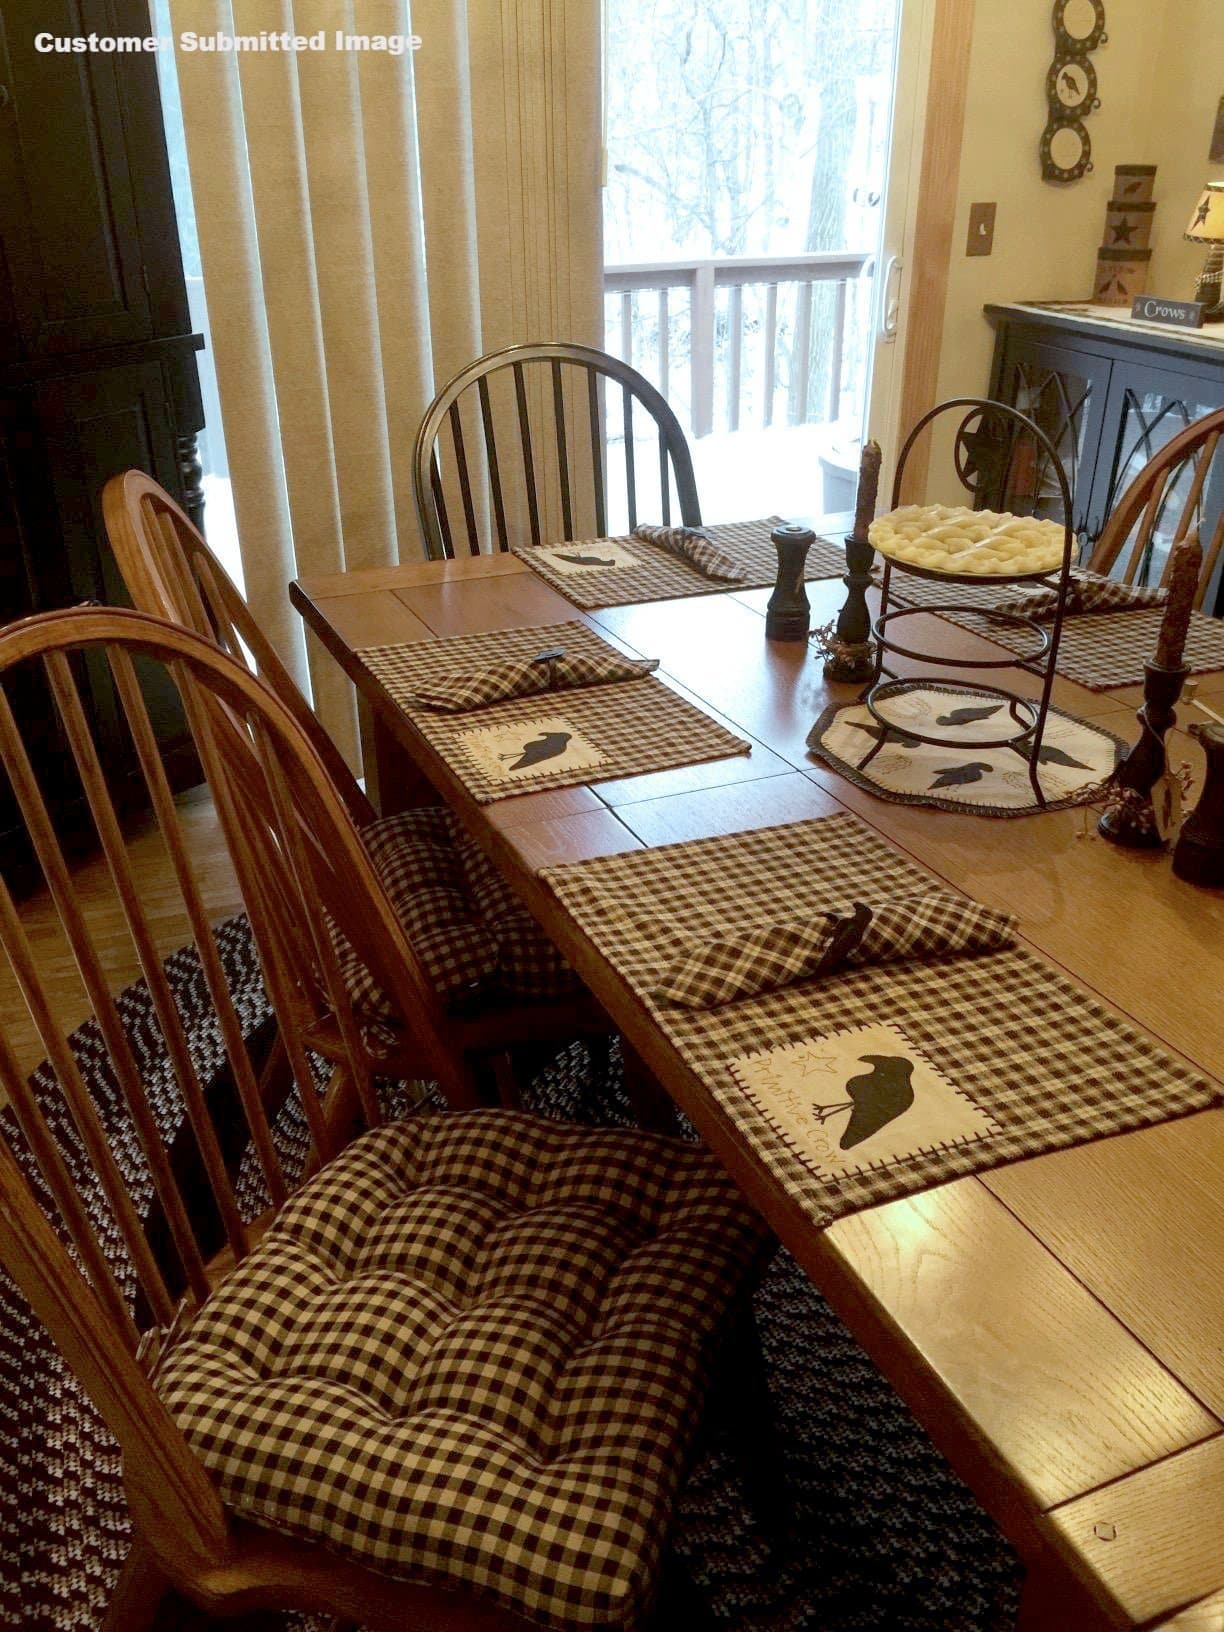 Checkers Black and Tan Plaid Dining Chair Cushion - Barnett Home Decor - Black & Tan